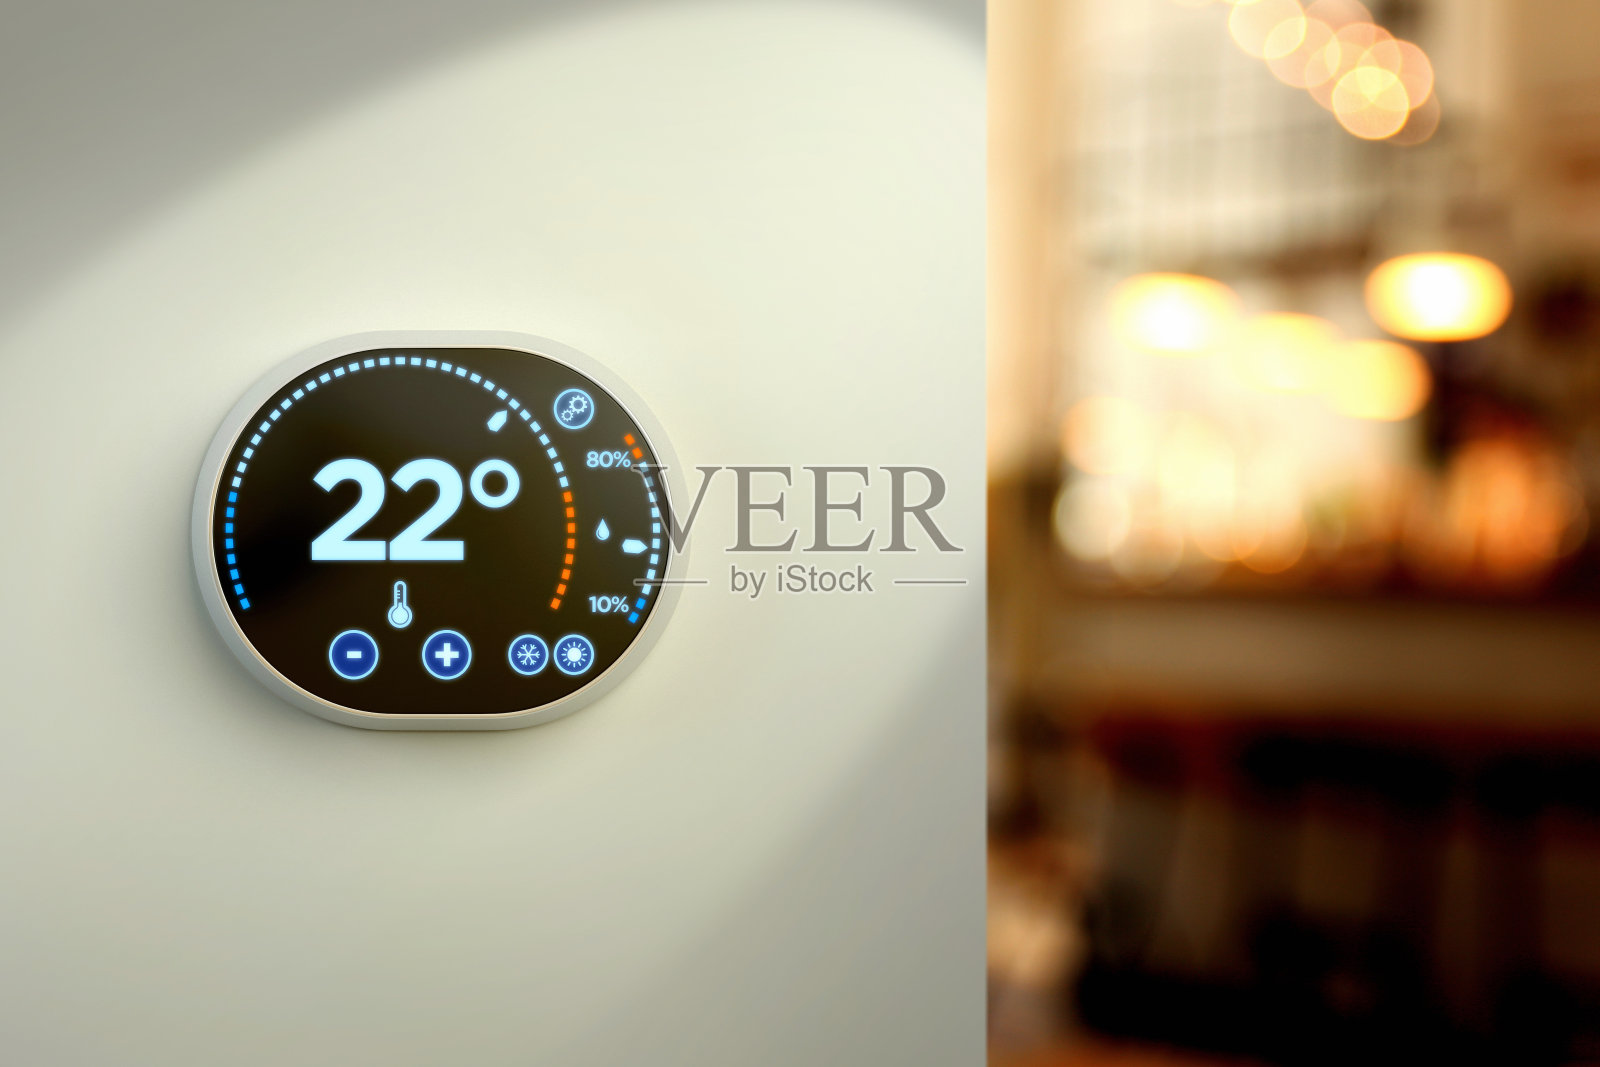 智能家居气候控制系统:摄氏温度墙显示照片摄影图片